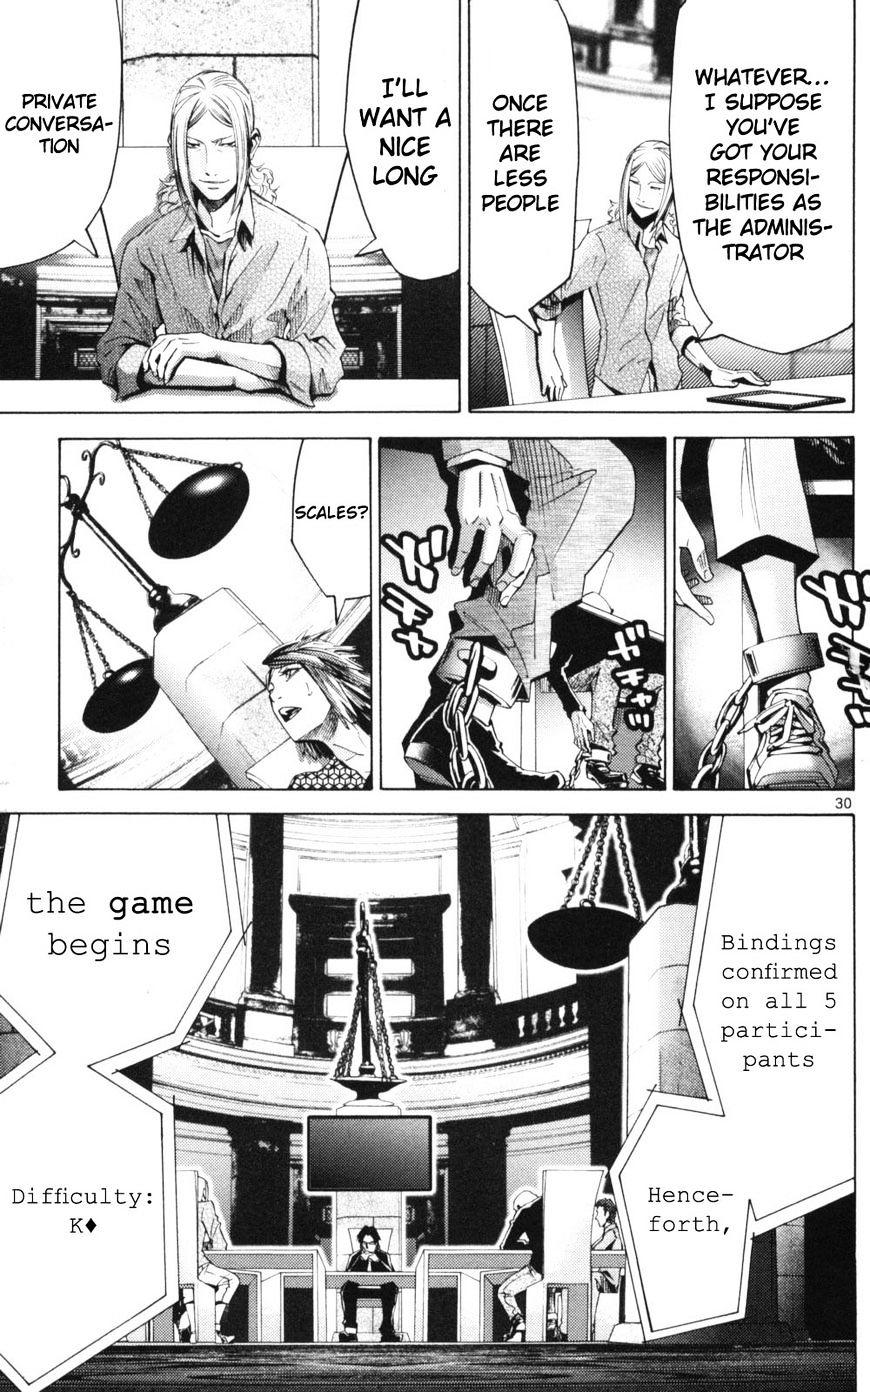 Imawa No Kuni No Alice Chapter 51.1 : Side Story 6 - King Of Diamonds (1) page 30 - Mangakakalot